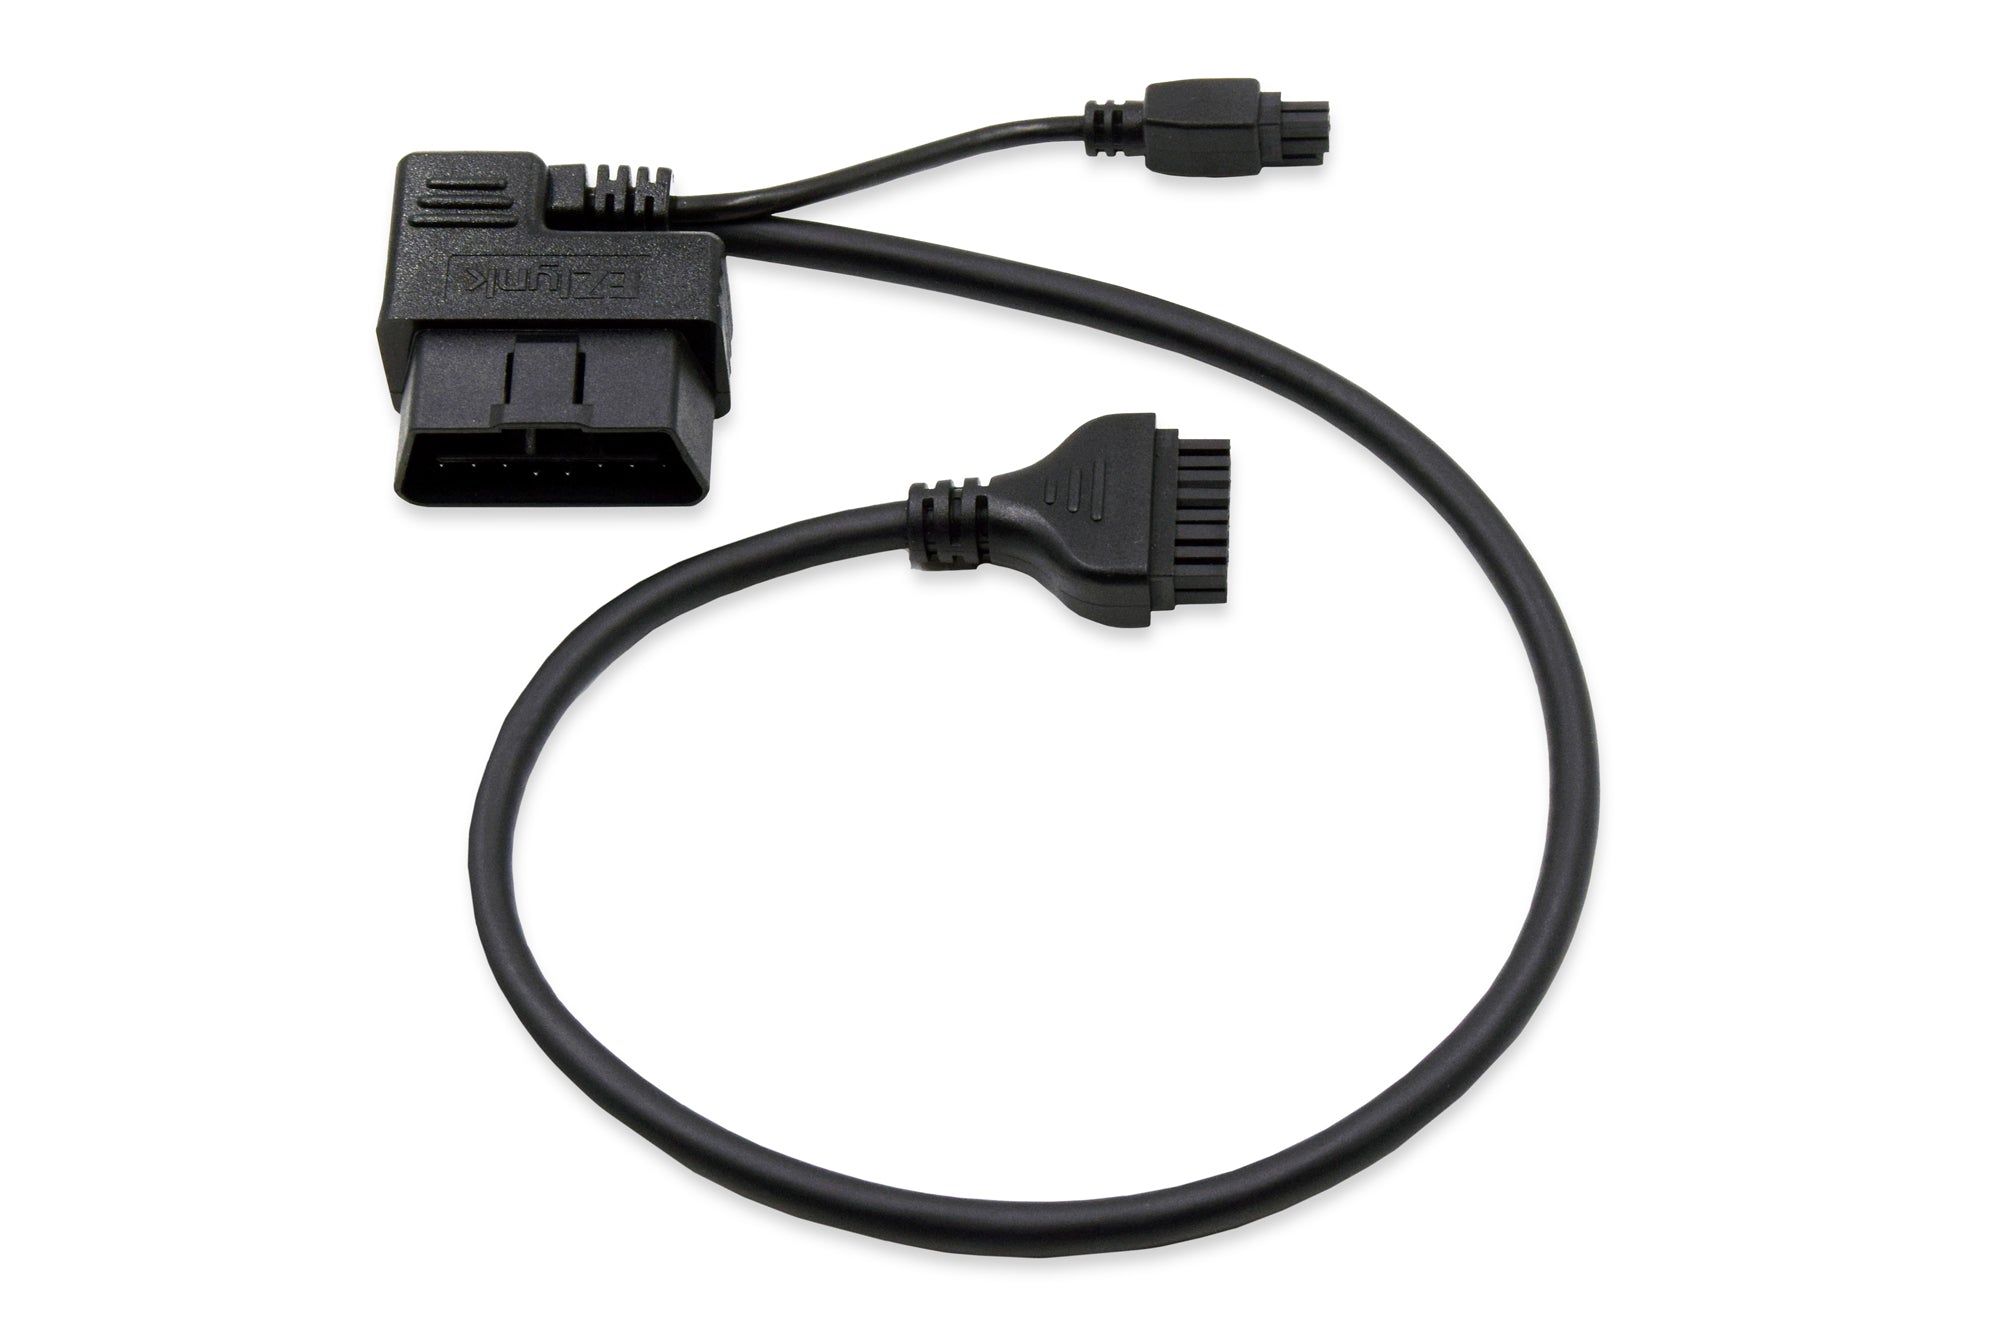 Proficient, Automatic rj45 obd cable for Vehicles 